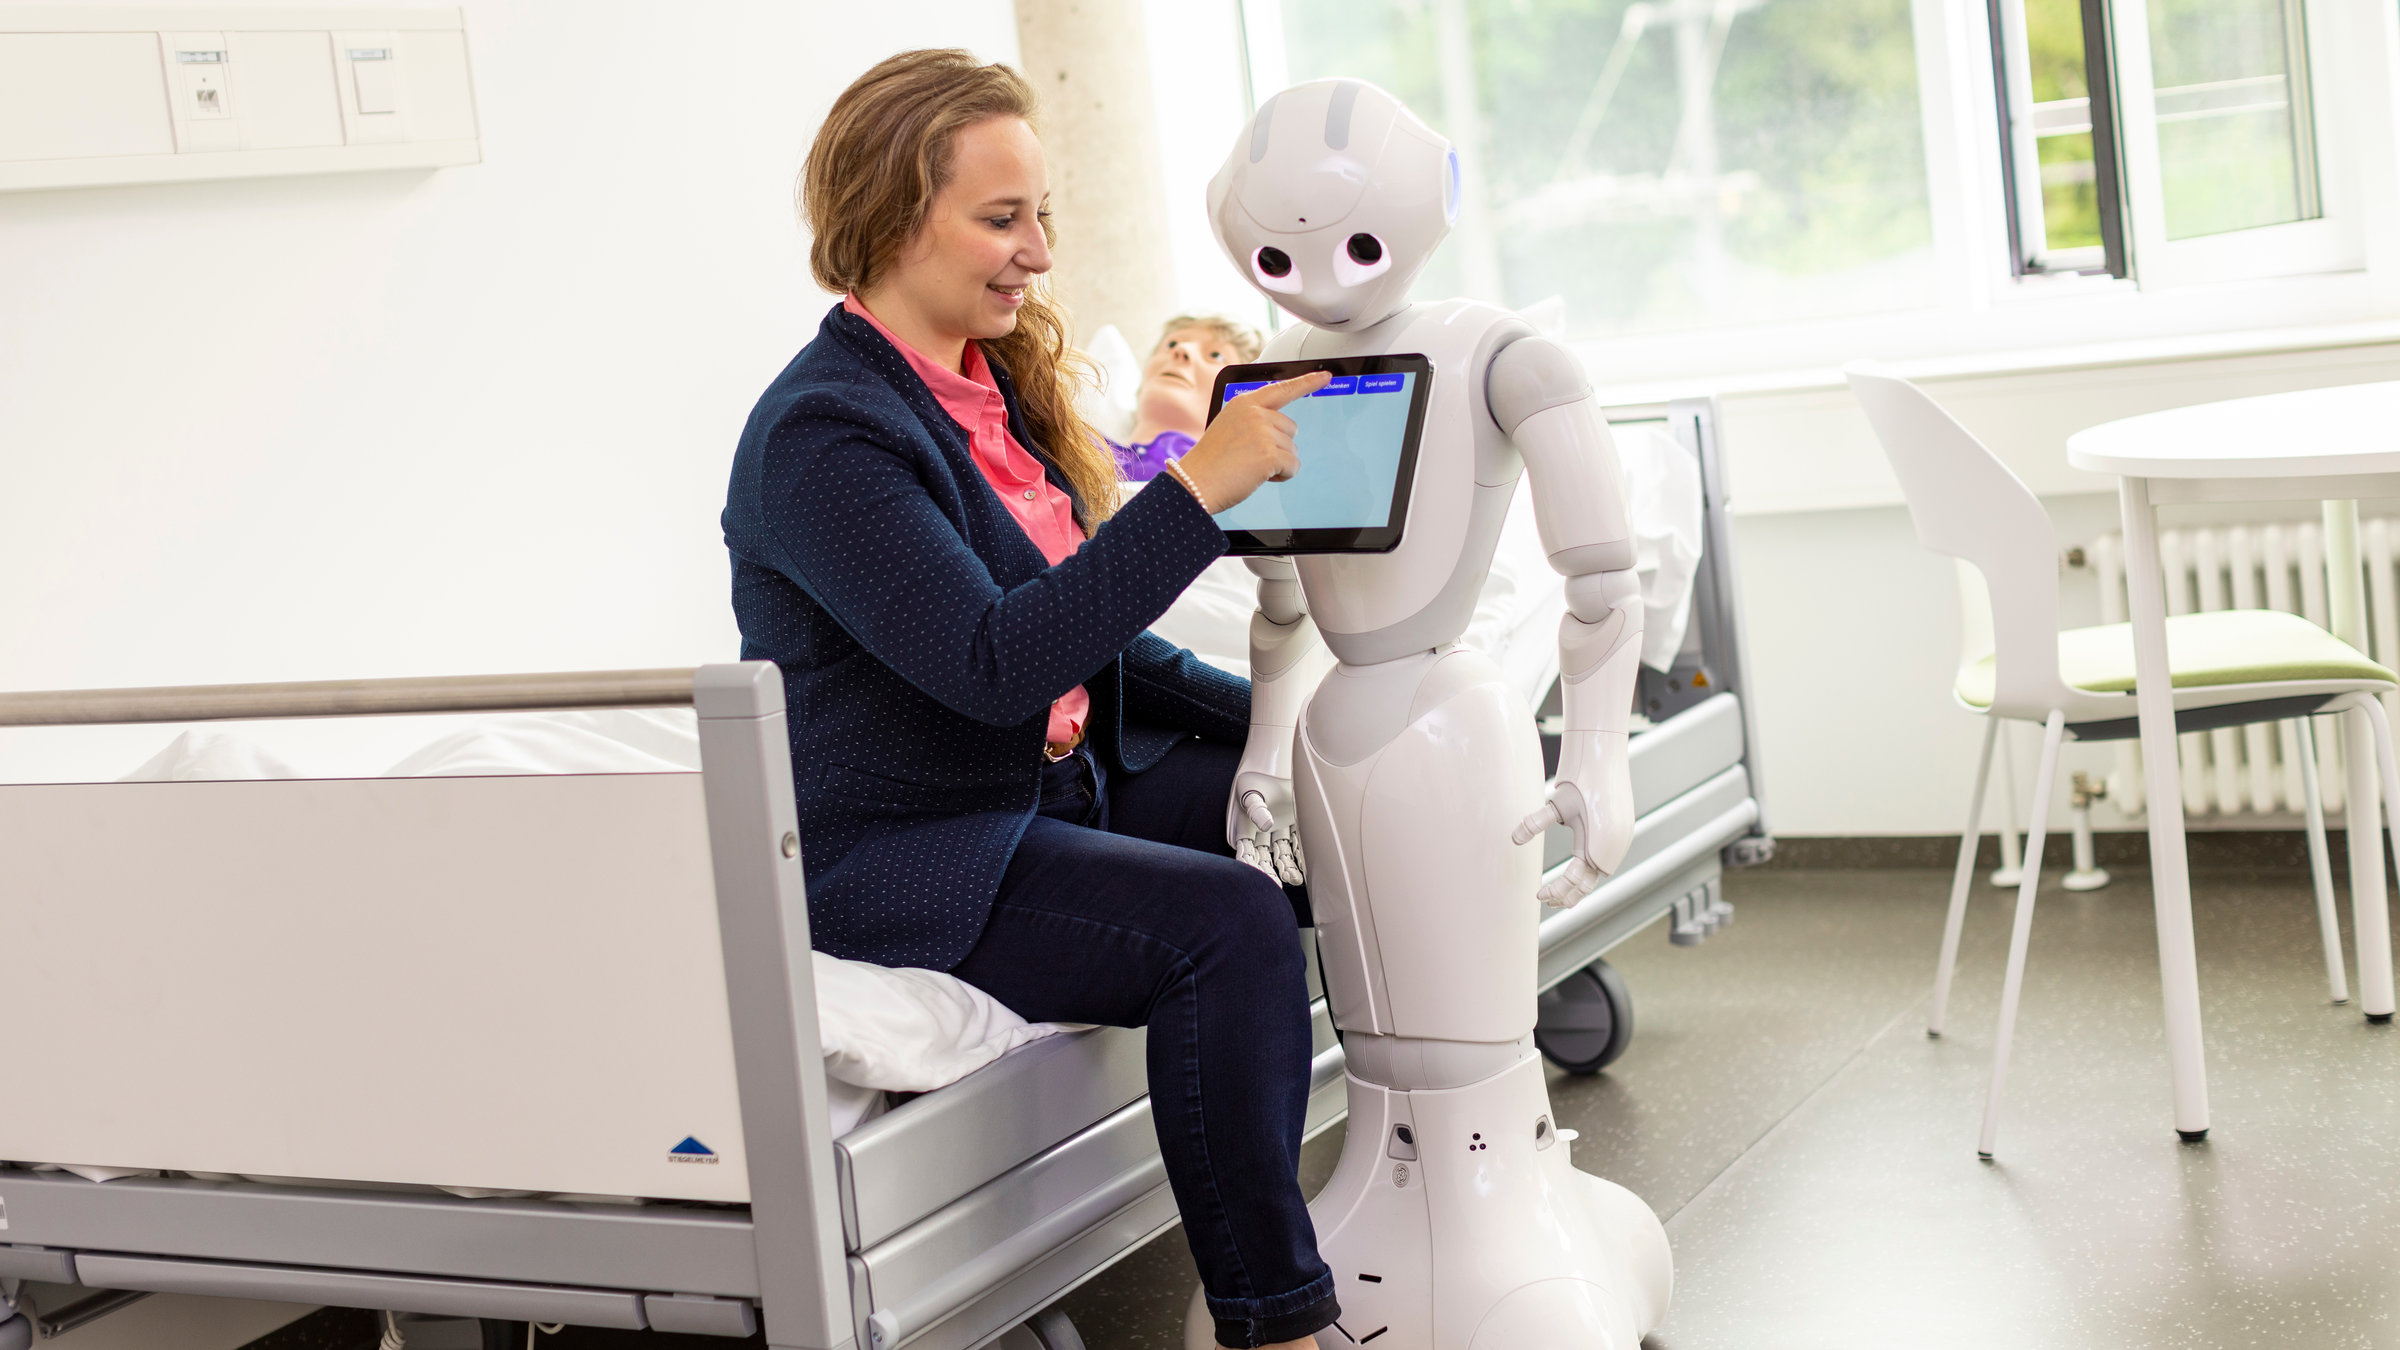 "37°: Schlauer als der Rest der Welt - Hochbegabte im Alltag": Pia Beyer-Wunsch mit dem Roboter Pepper, den sie im Rahmen ihrer Doktorarbeit entwickelt, in der Universität Ulm mit einem Patienten-Dummie im Hintergrund im Bett.